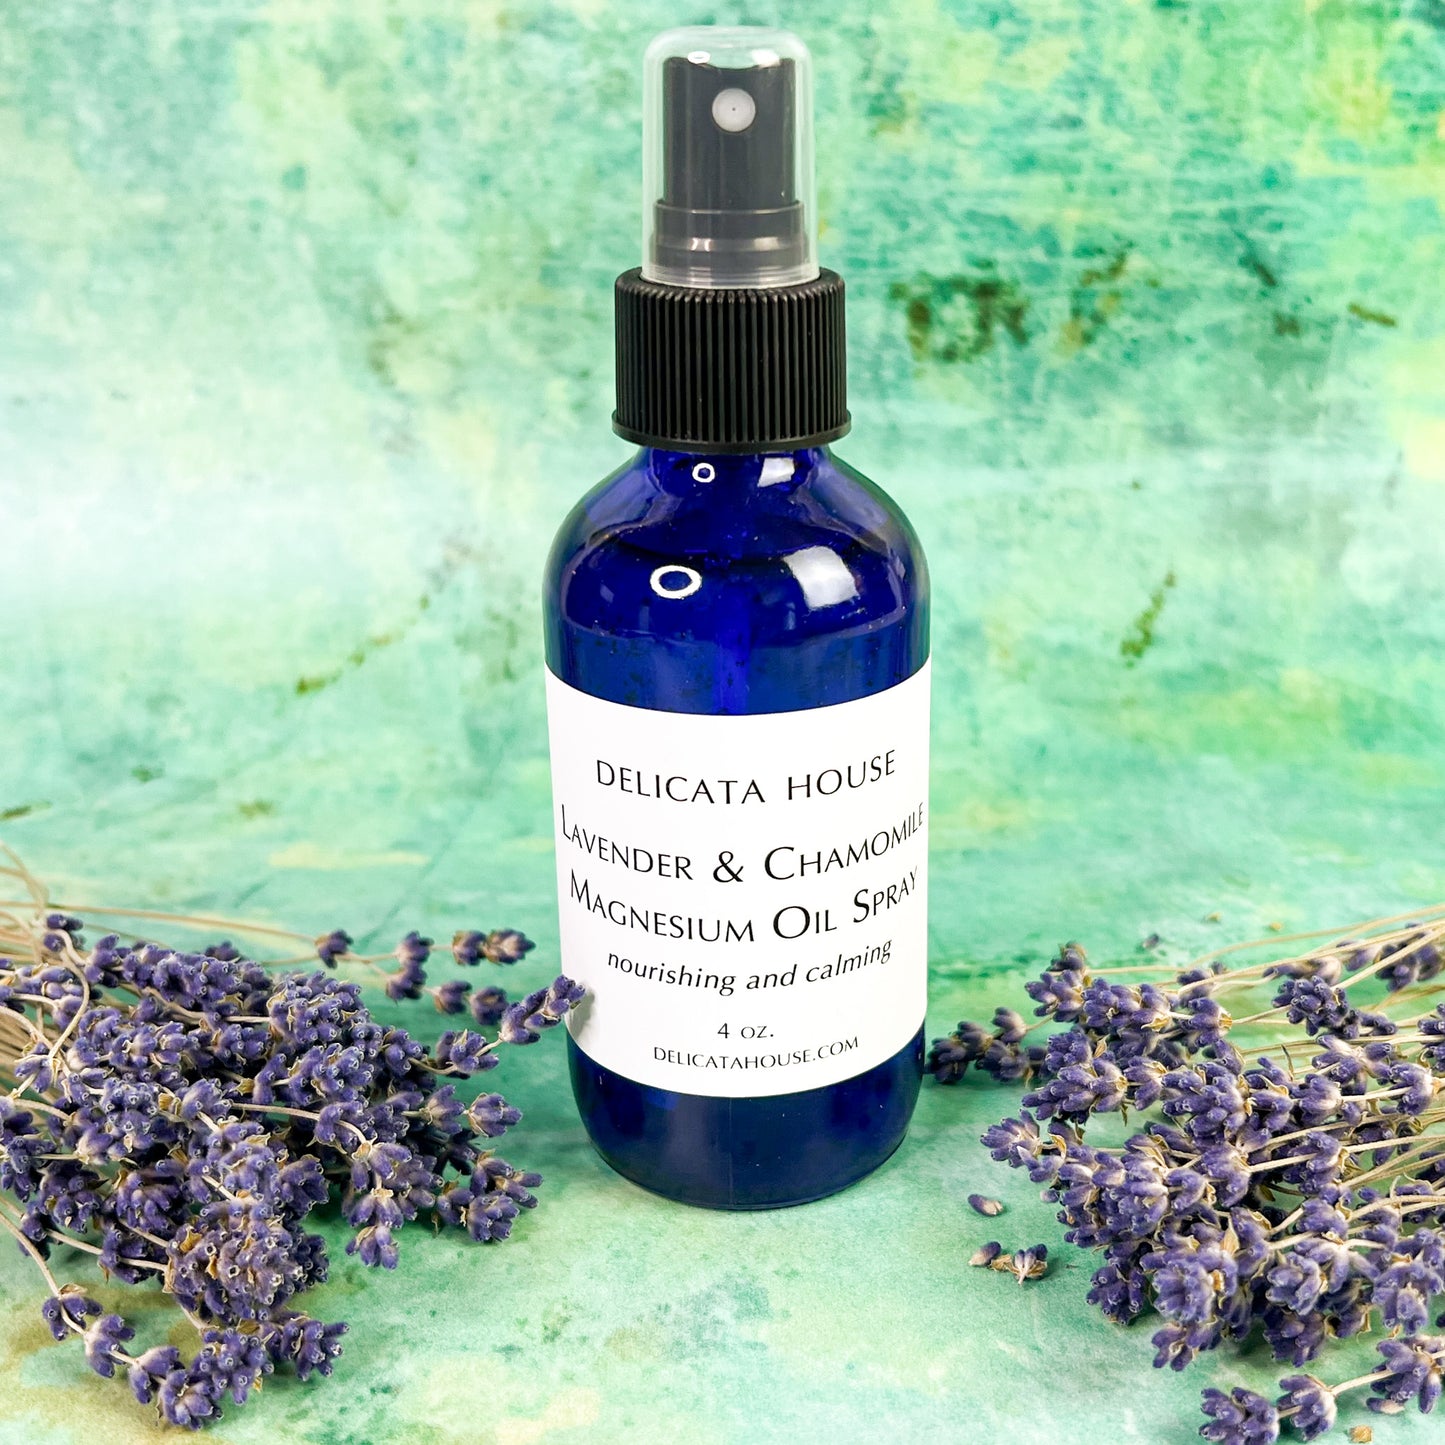 Lavender & Chamomile Magnesium Oil Spray - Magnesium Spray - Natural Sleep Aid